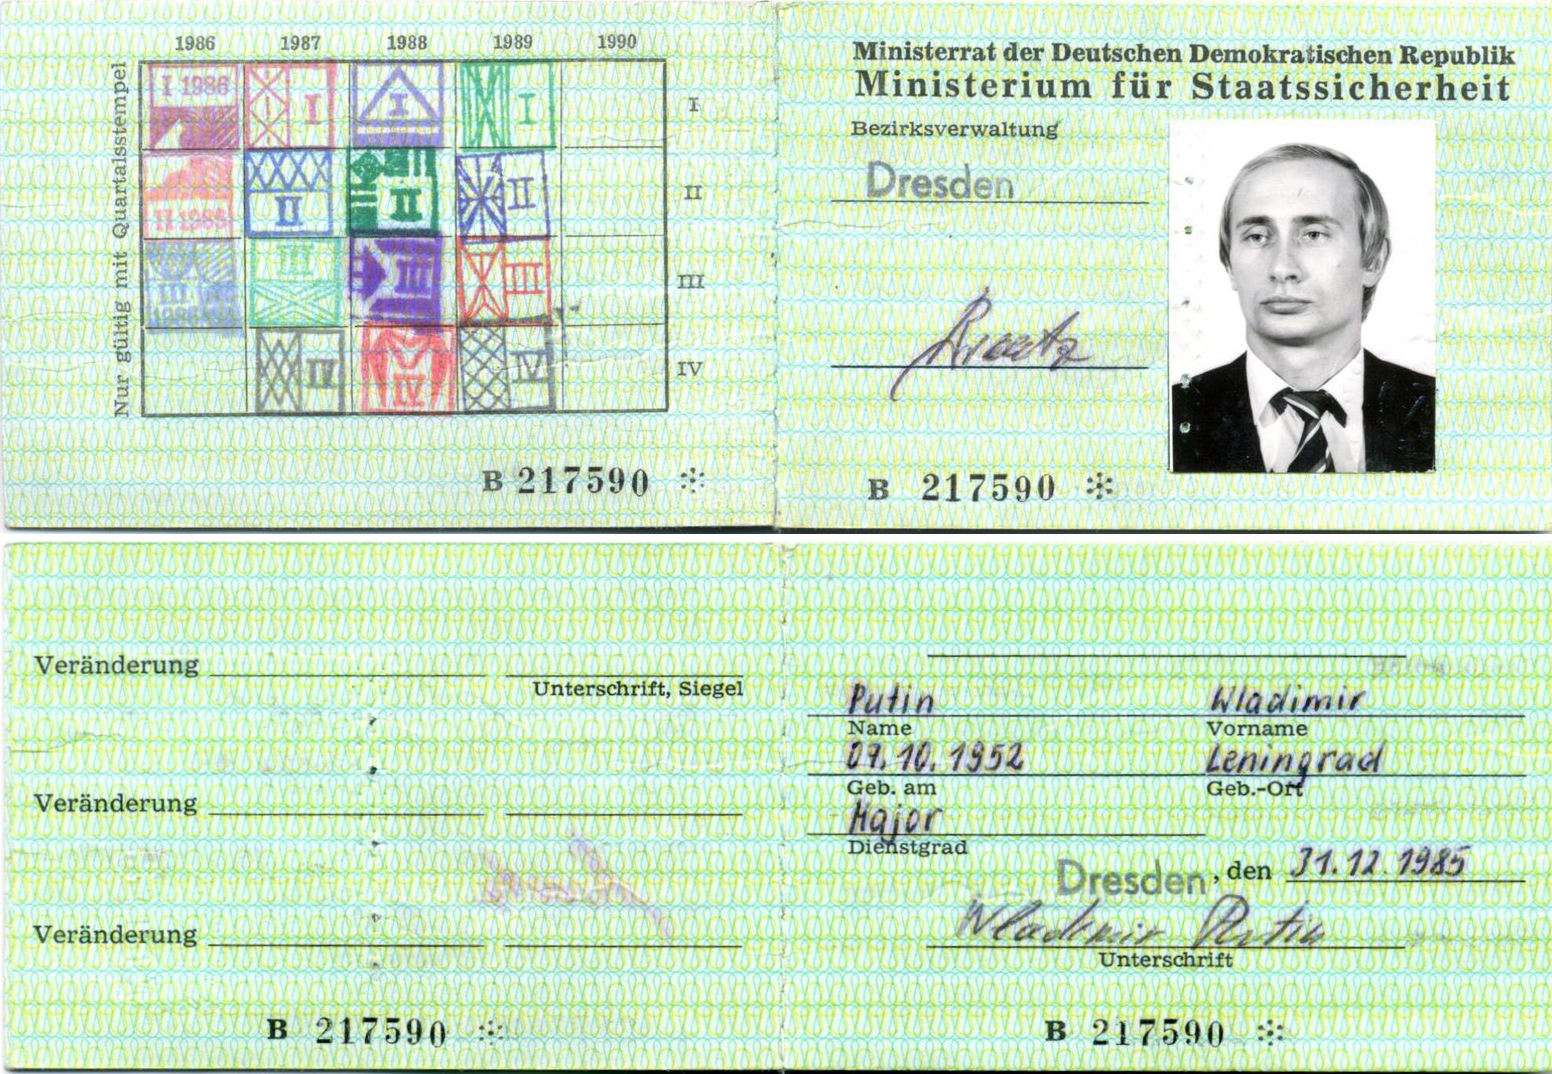 Putin-Stasi-Ausweis.png